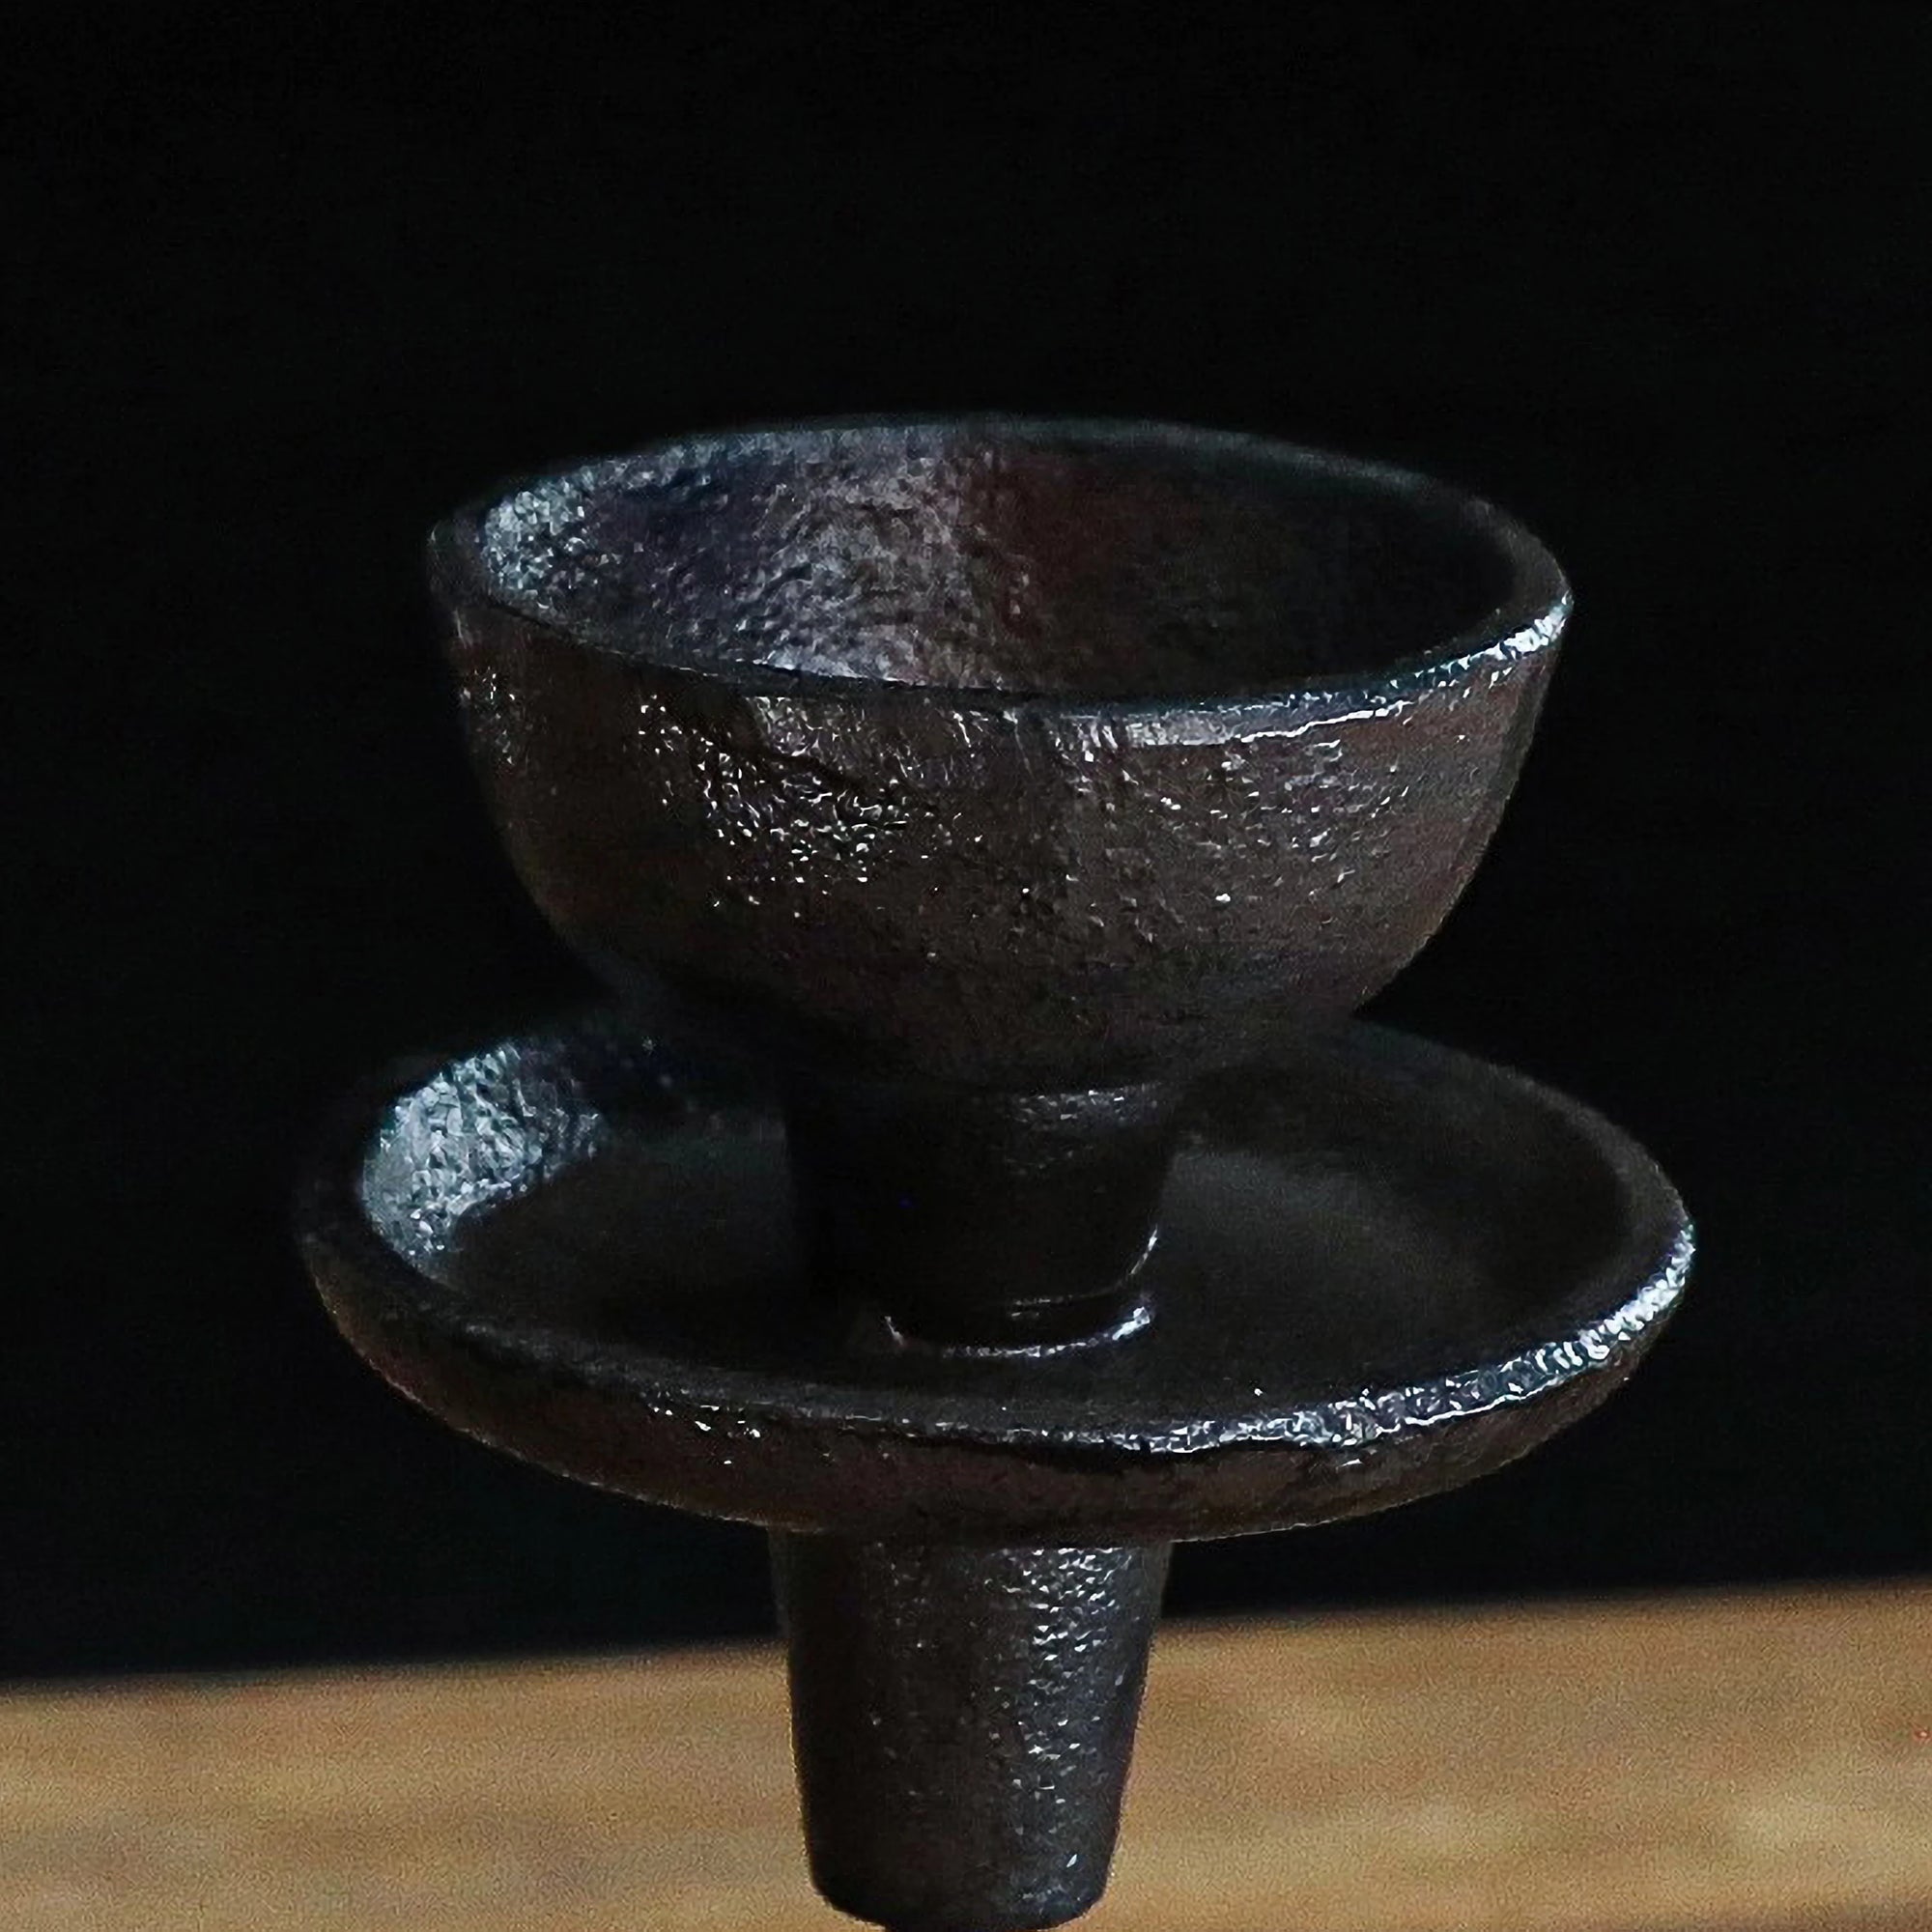 Hand-Forged Iron Candleholder Set